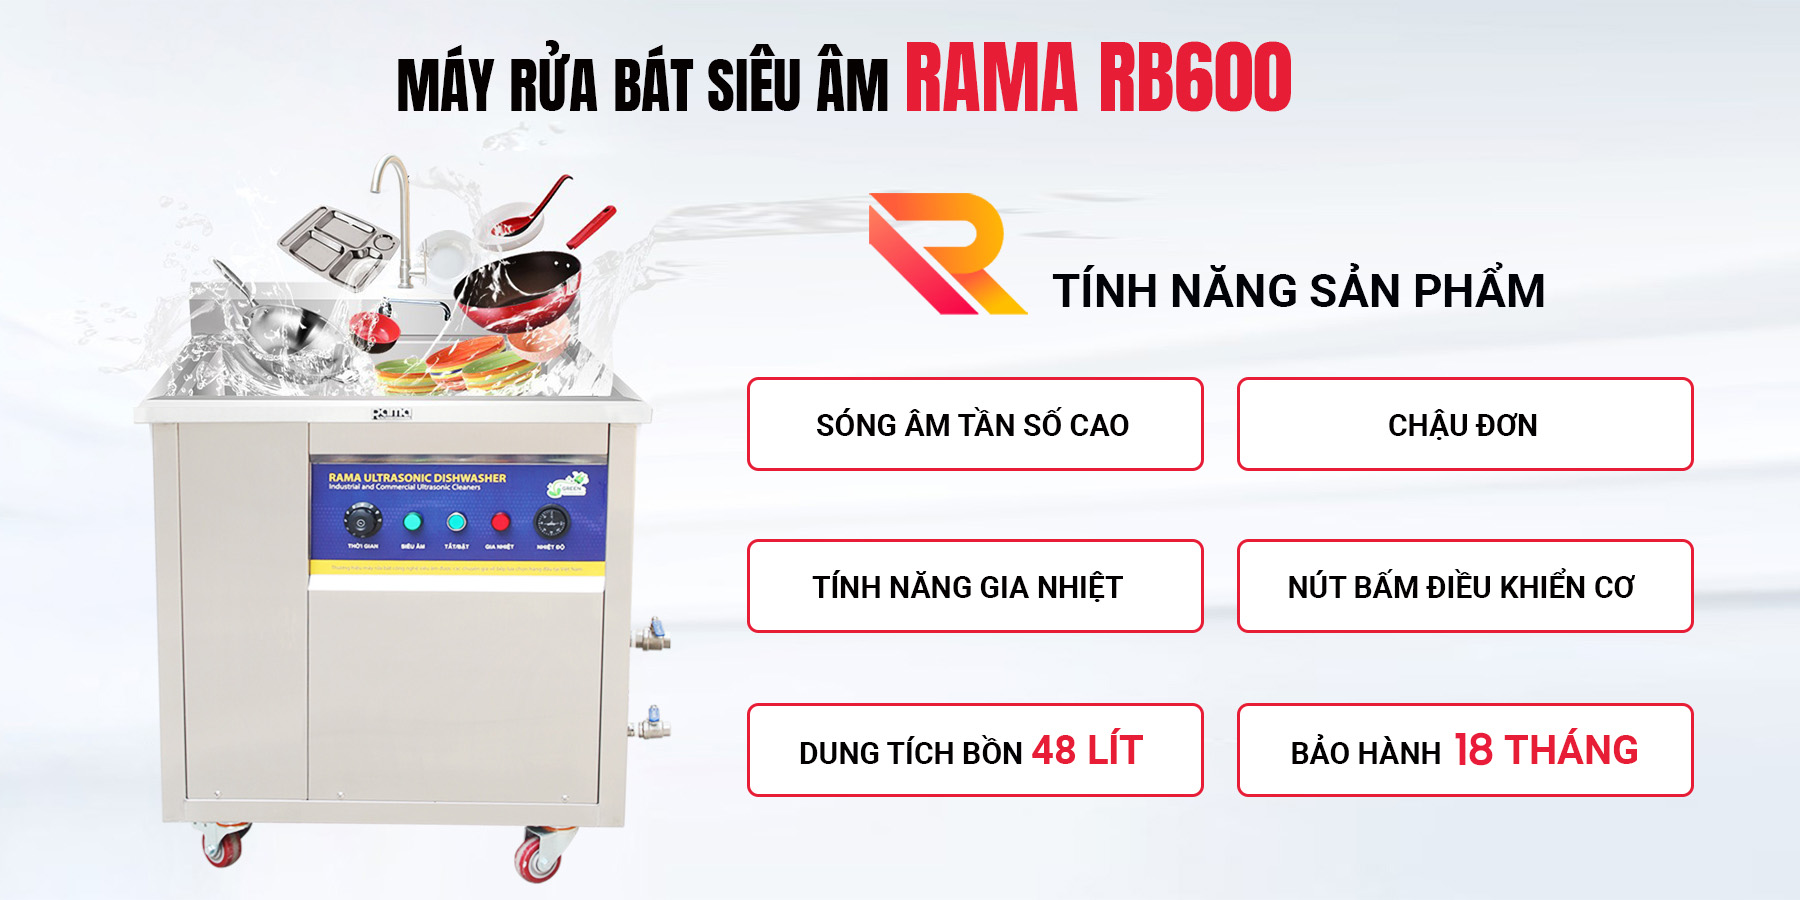 Giới thiệu máy rửa bát siêu âm Rama RB600